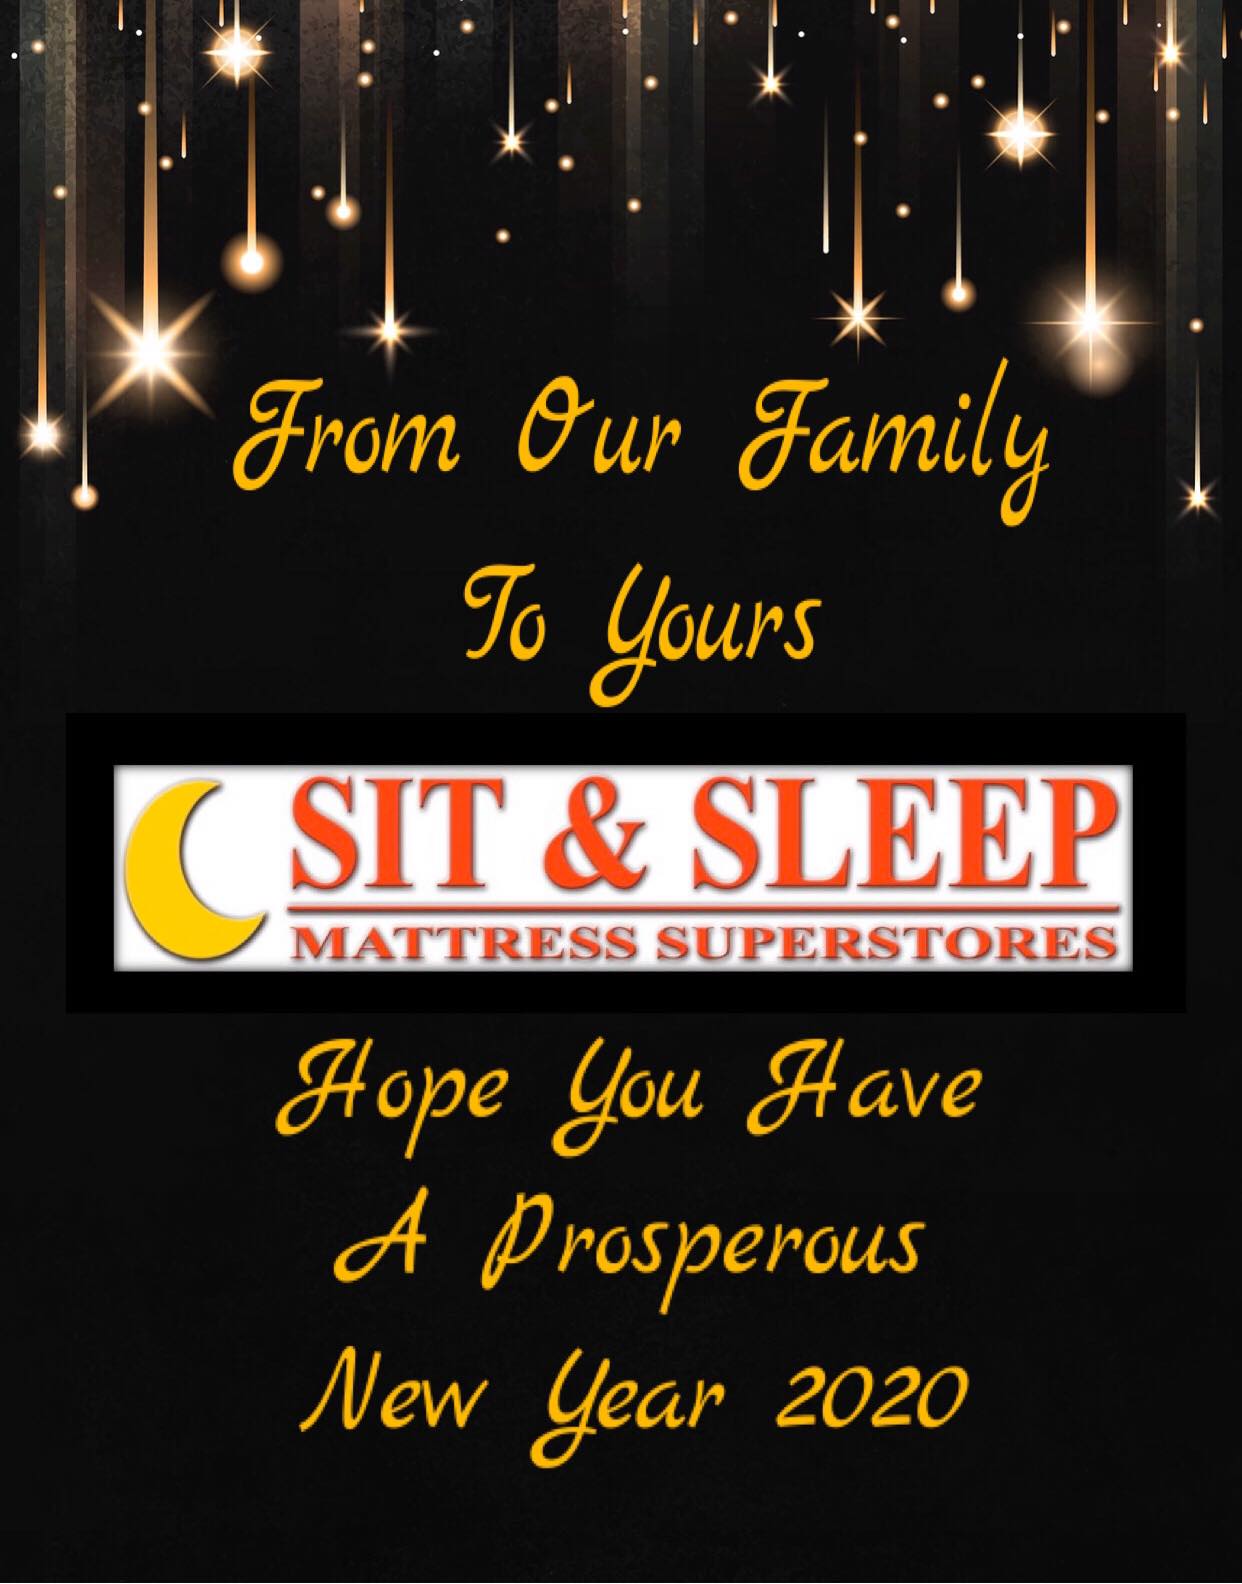 Sit & Sleep Mattress - Statesboro